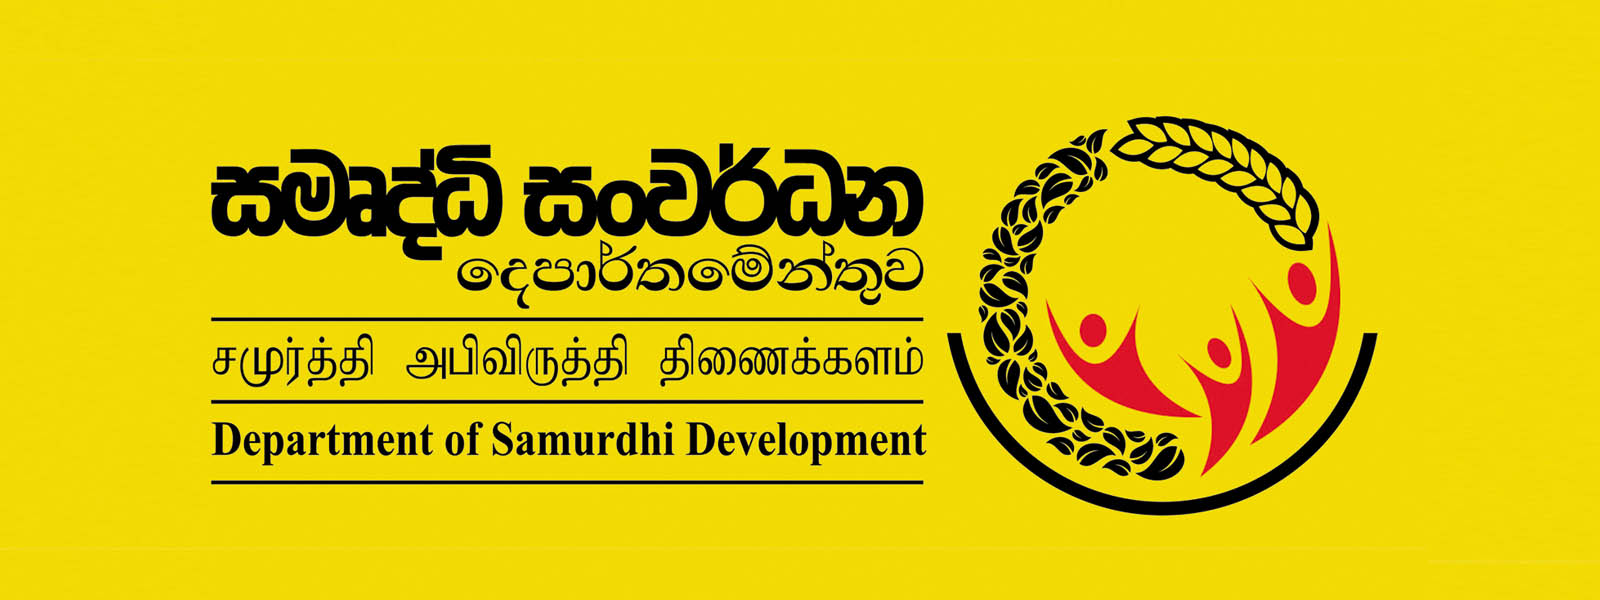 Over 500,000 new Samurdhi applicants